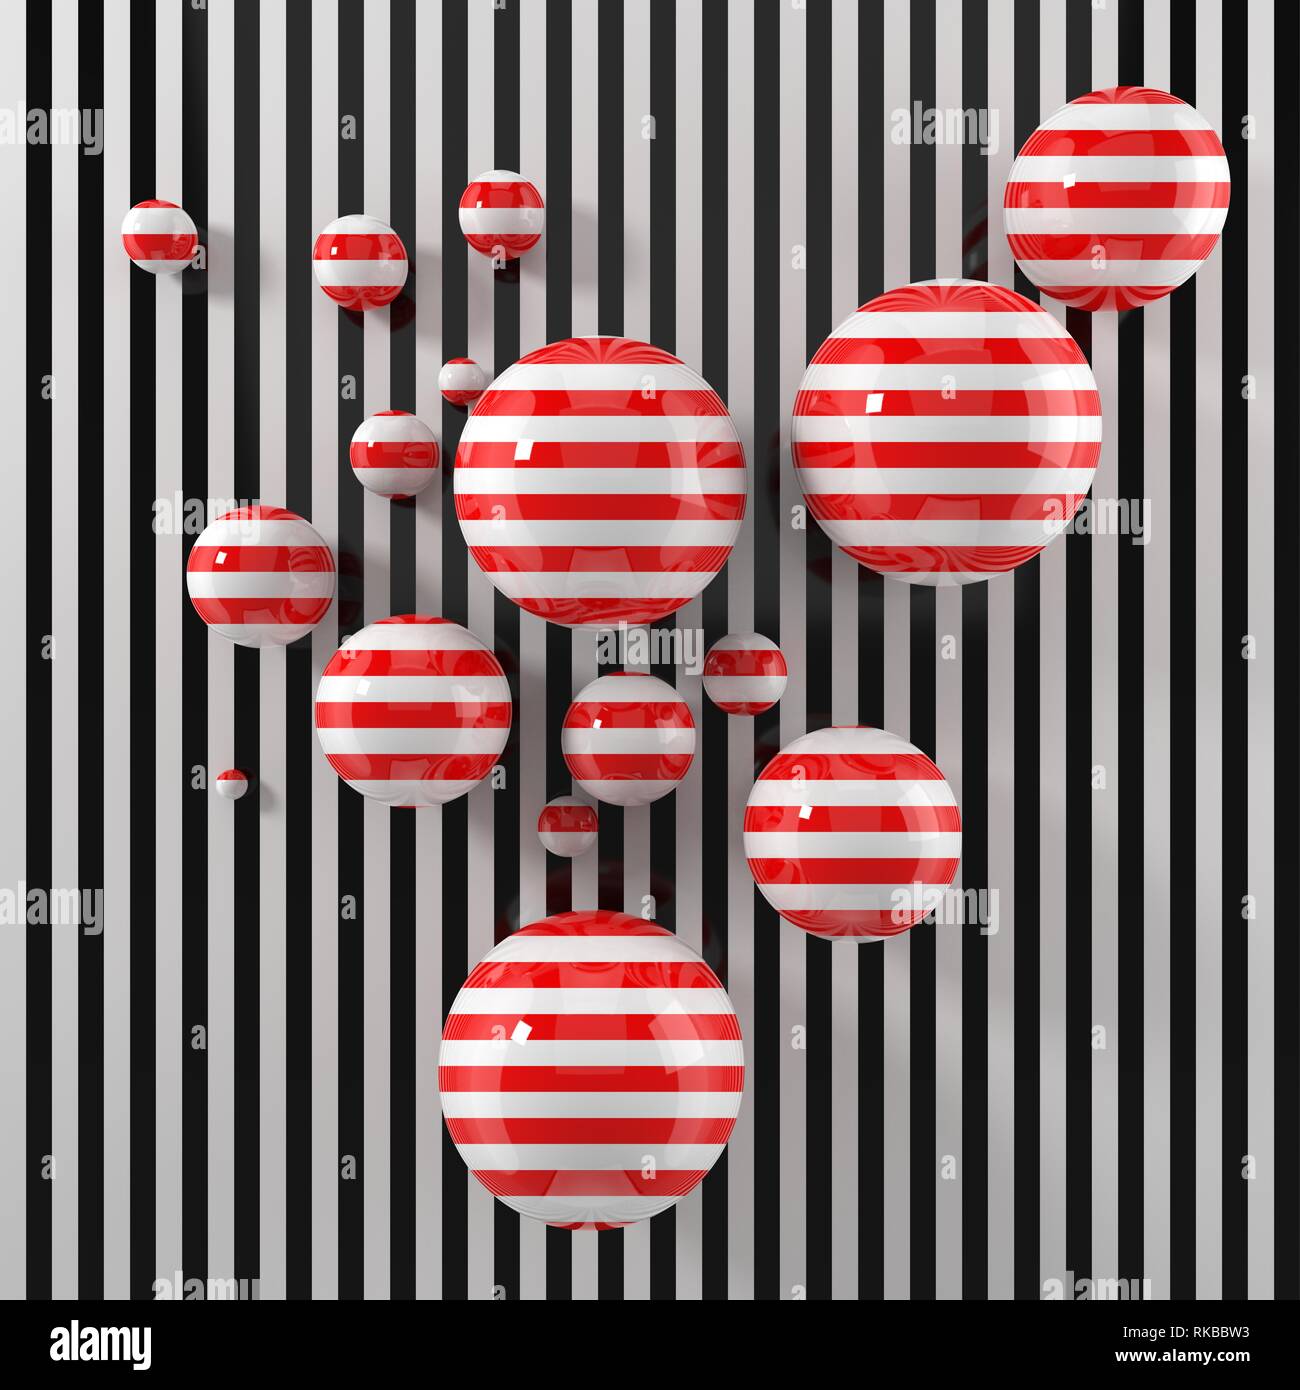 Moderne Kunst Konzept mit Streifen bemalt Kugeln auf schwarzem Streifen Stock. Geeignet für Illusion, Kunst und moderne Grafik desing Themen. 3D-Darstellung. Stockfoto